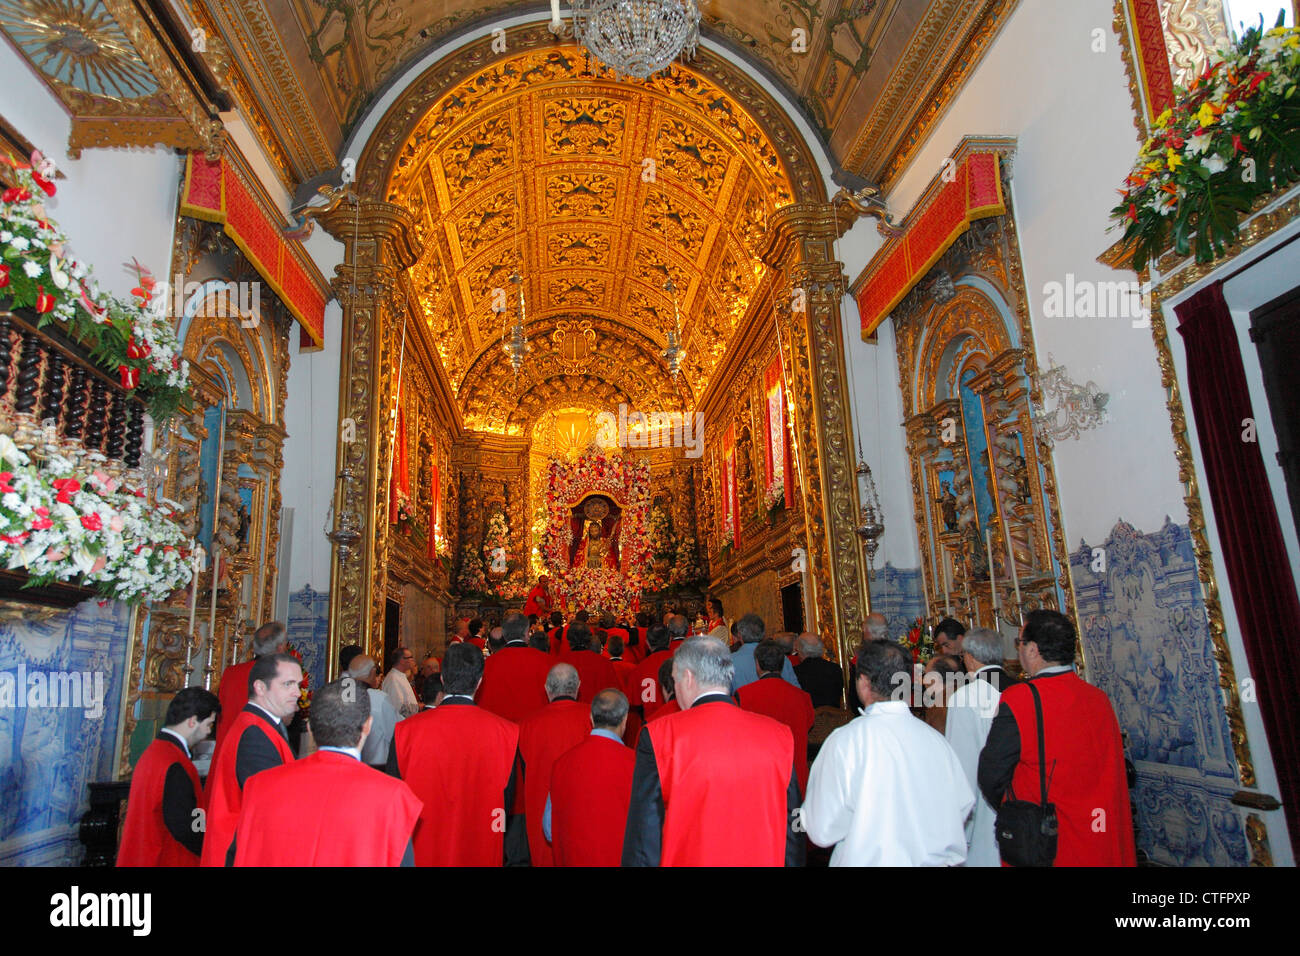 Le feste religiose del Santo Cristo dos Milagres (Nostro Signore Santo Cristo dei Miracoli) a Ponta Delgada, isole Azzorre Foto Stock